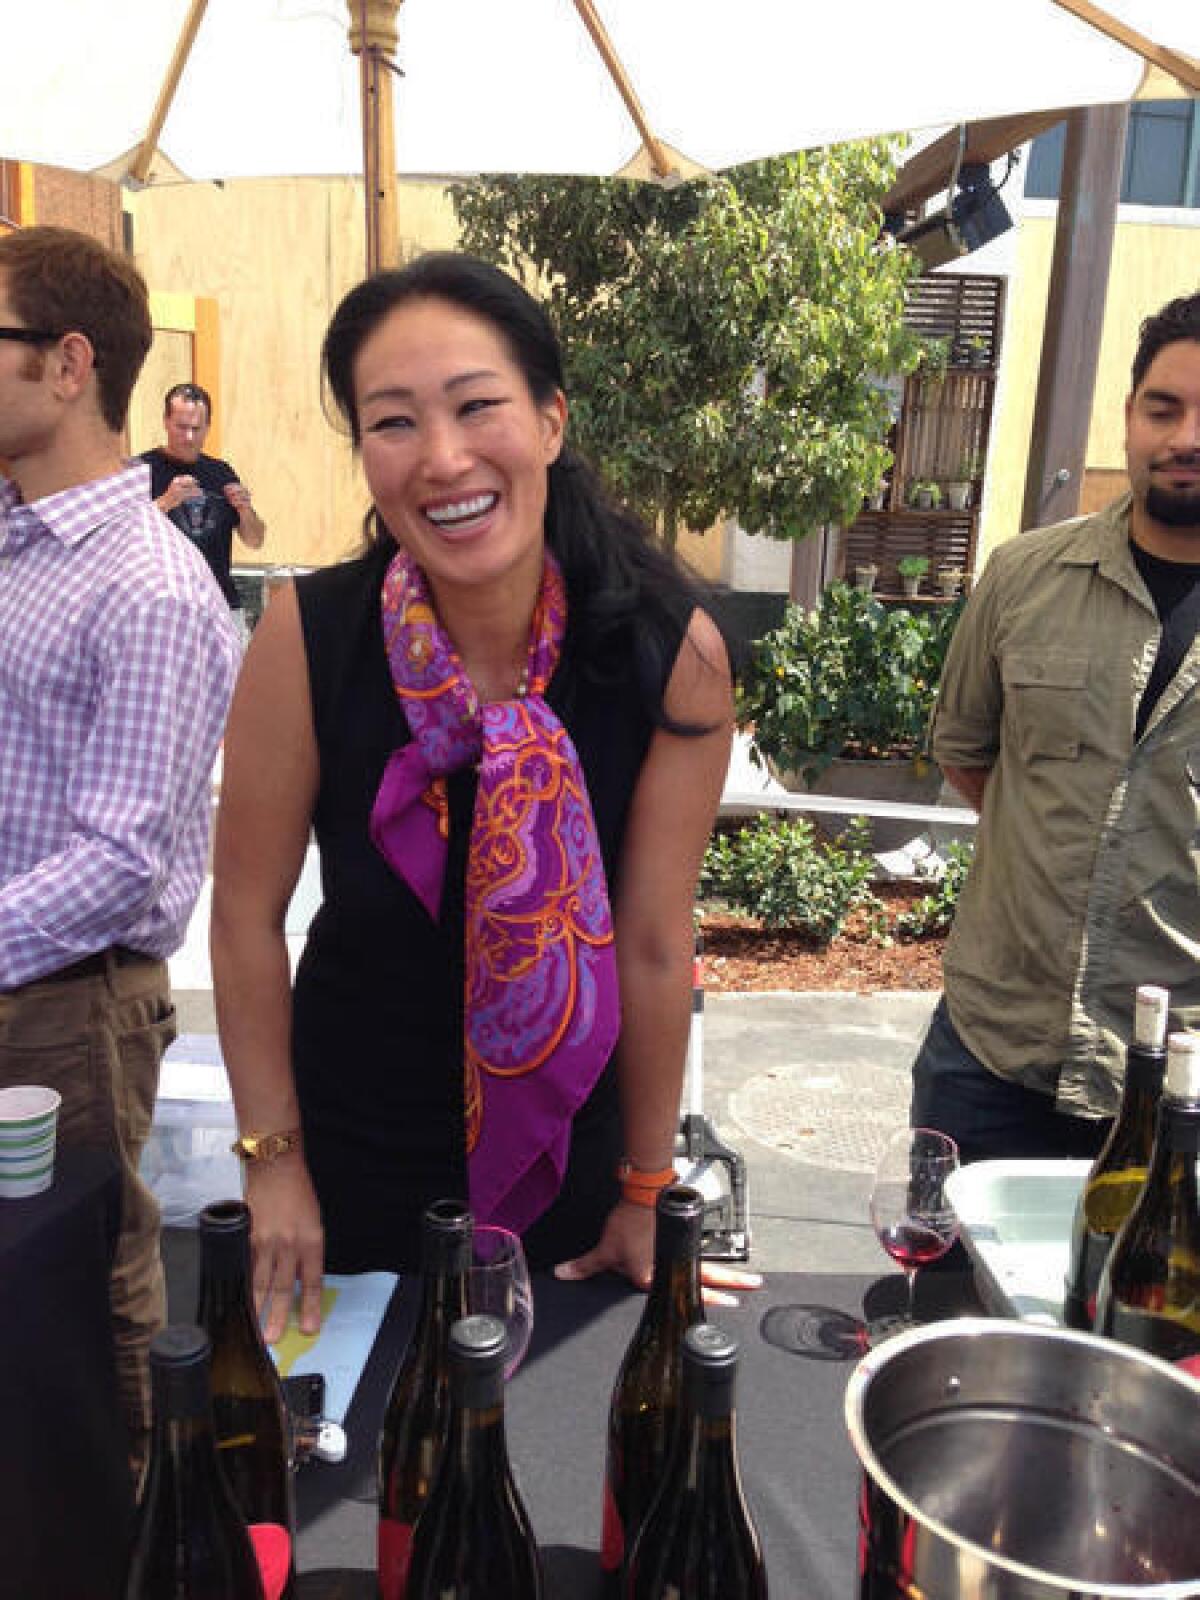 Jenni Bonaccorsi pours her wine at last year's Santa Barbara County Wine Futures Tasting.